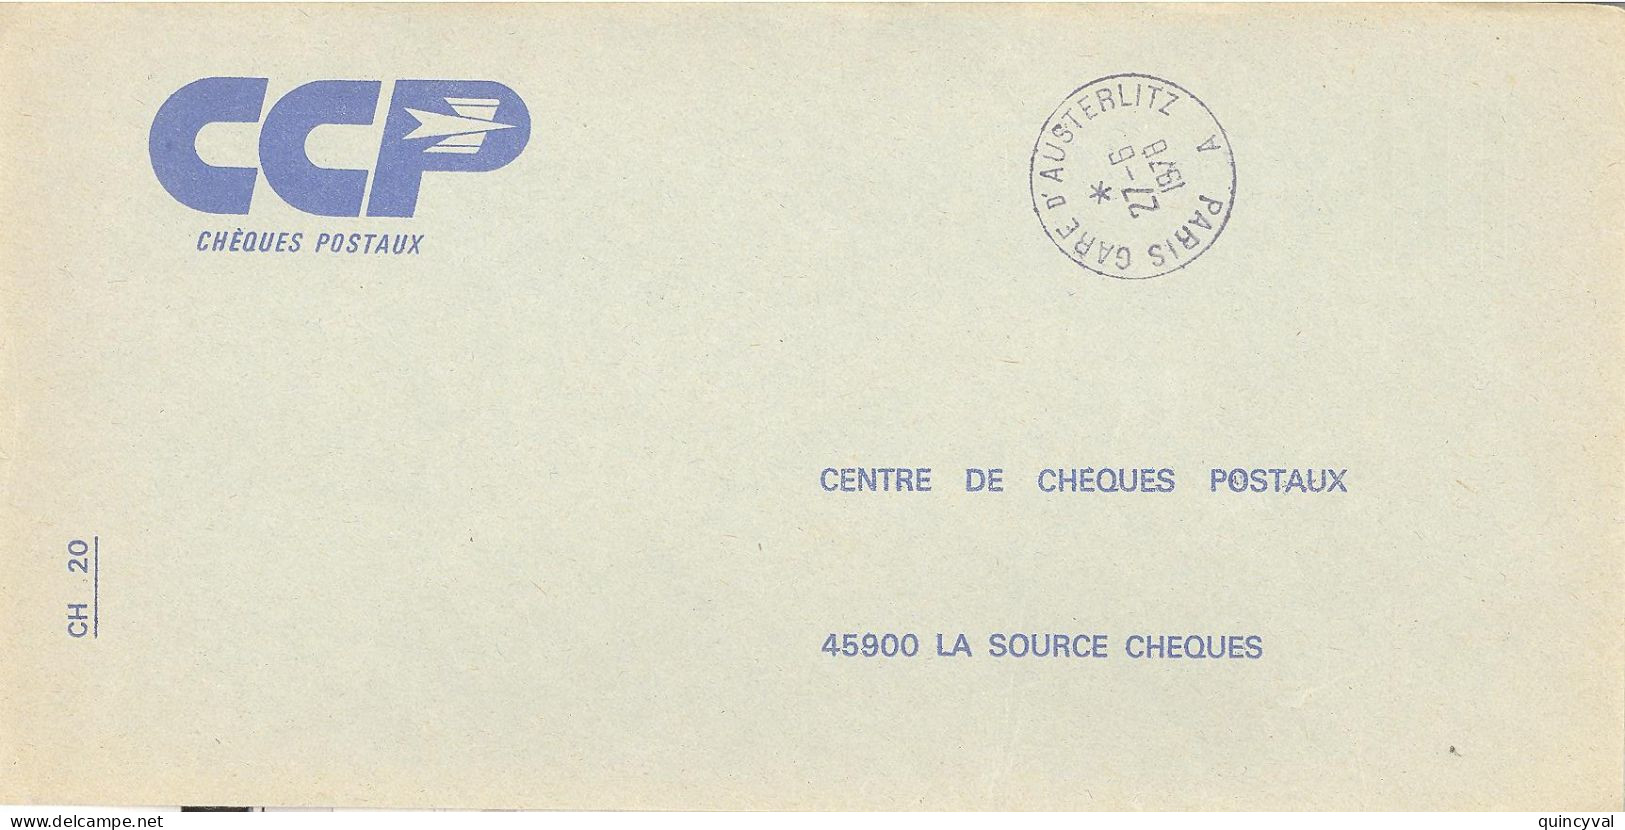 PARIS GARE D'AUSTERLITZ  A    Lettre Enveloppe Des CCP Ob 27 6 1978 - Cachets Manuels